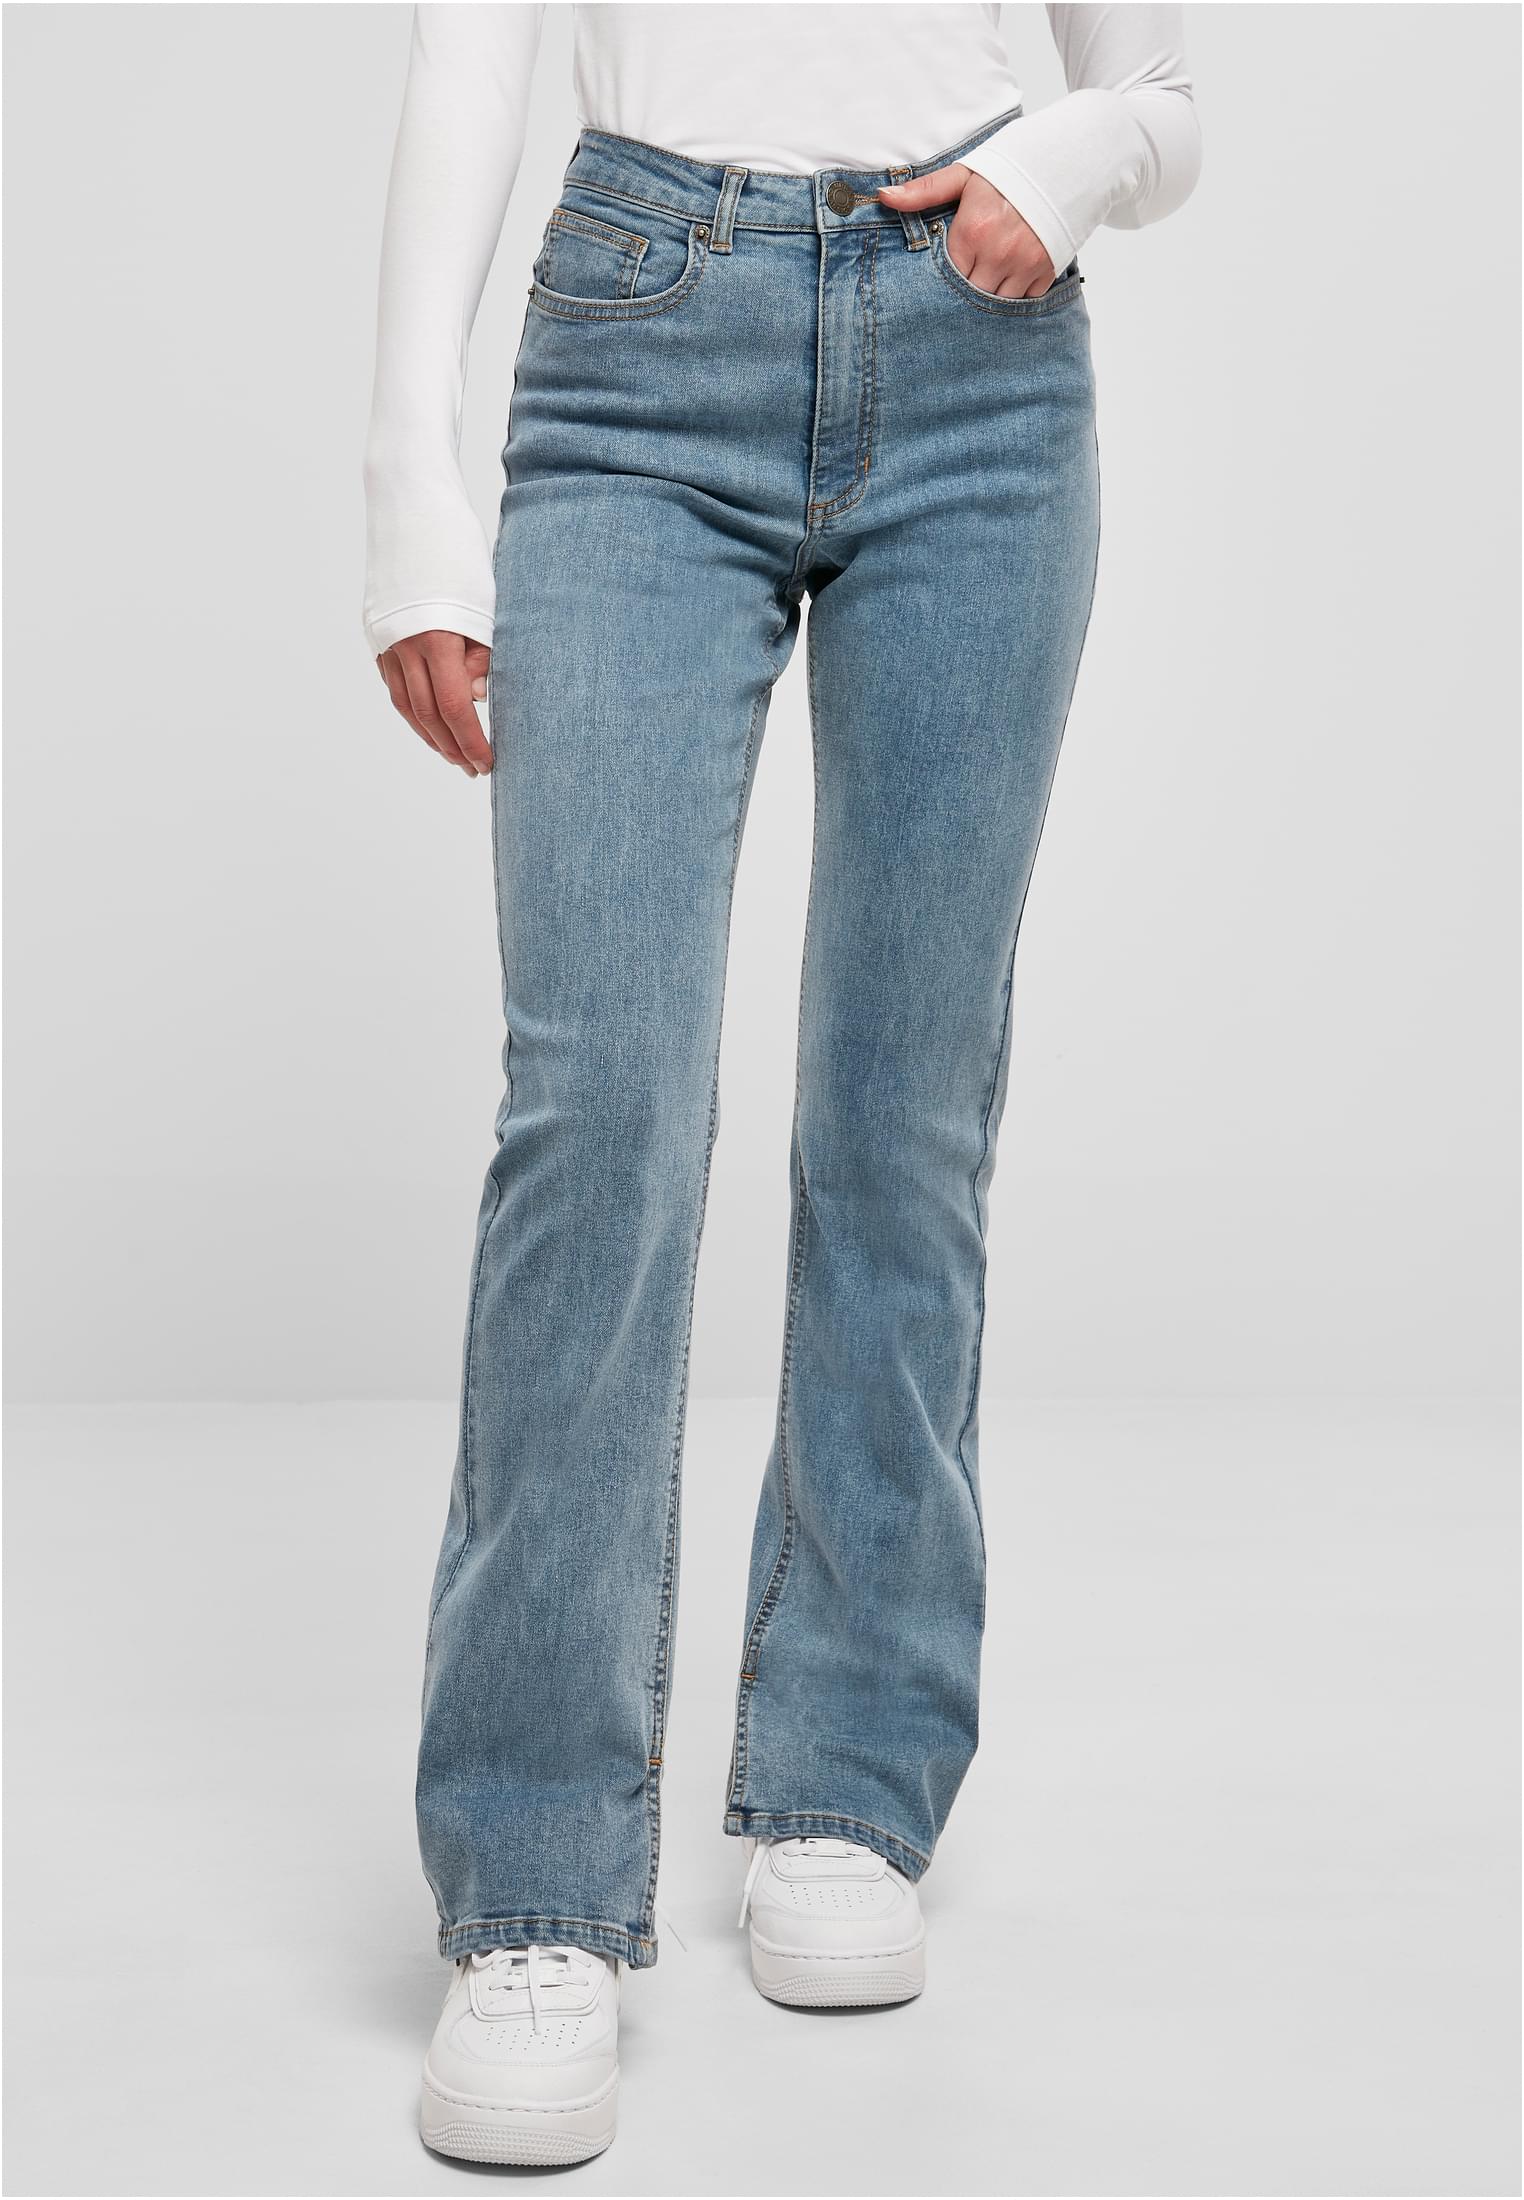 Dámske džínsové nohavice s vysokým pásom s rovným rozparkom - modré